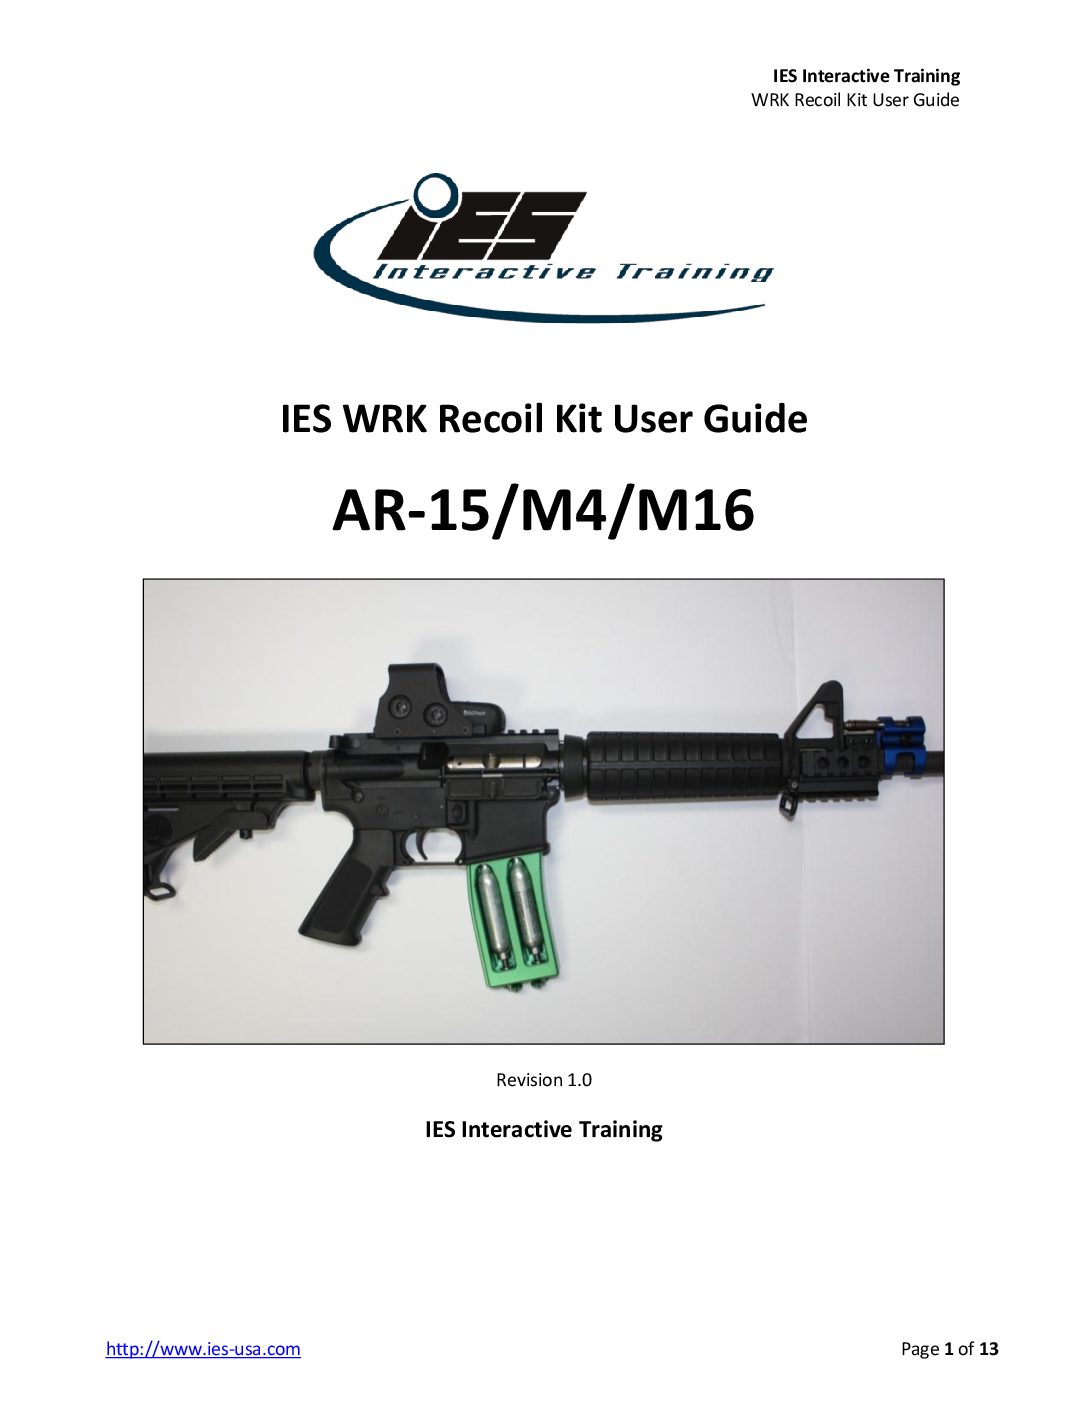 AR15-M4-M16 WRK Recoil Kit User Guide